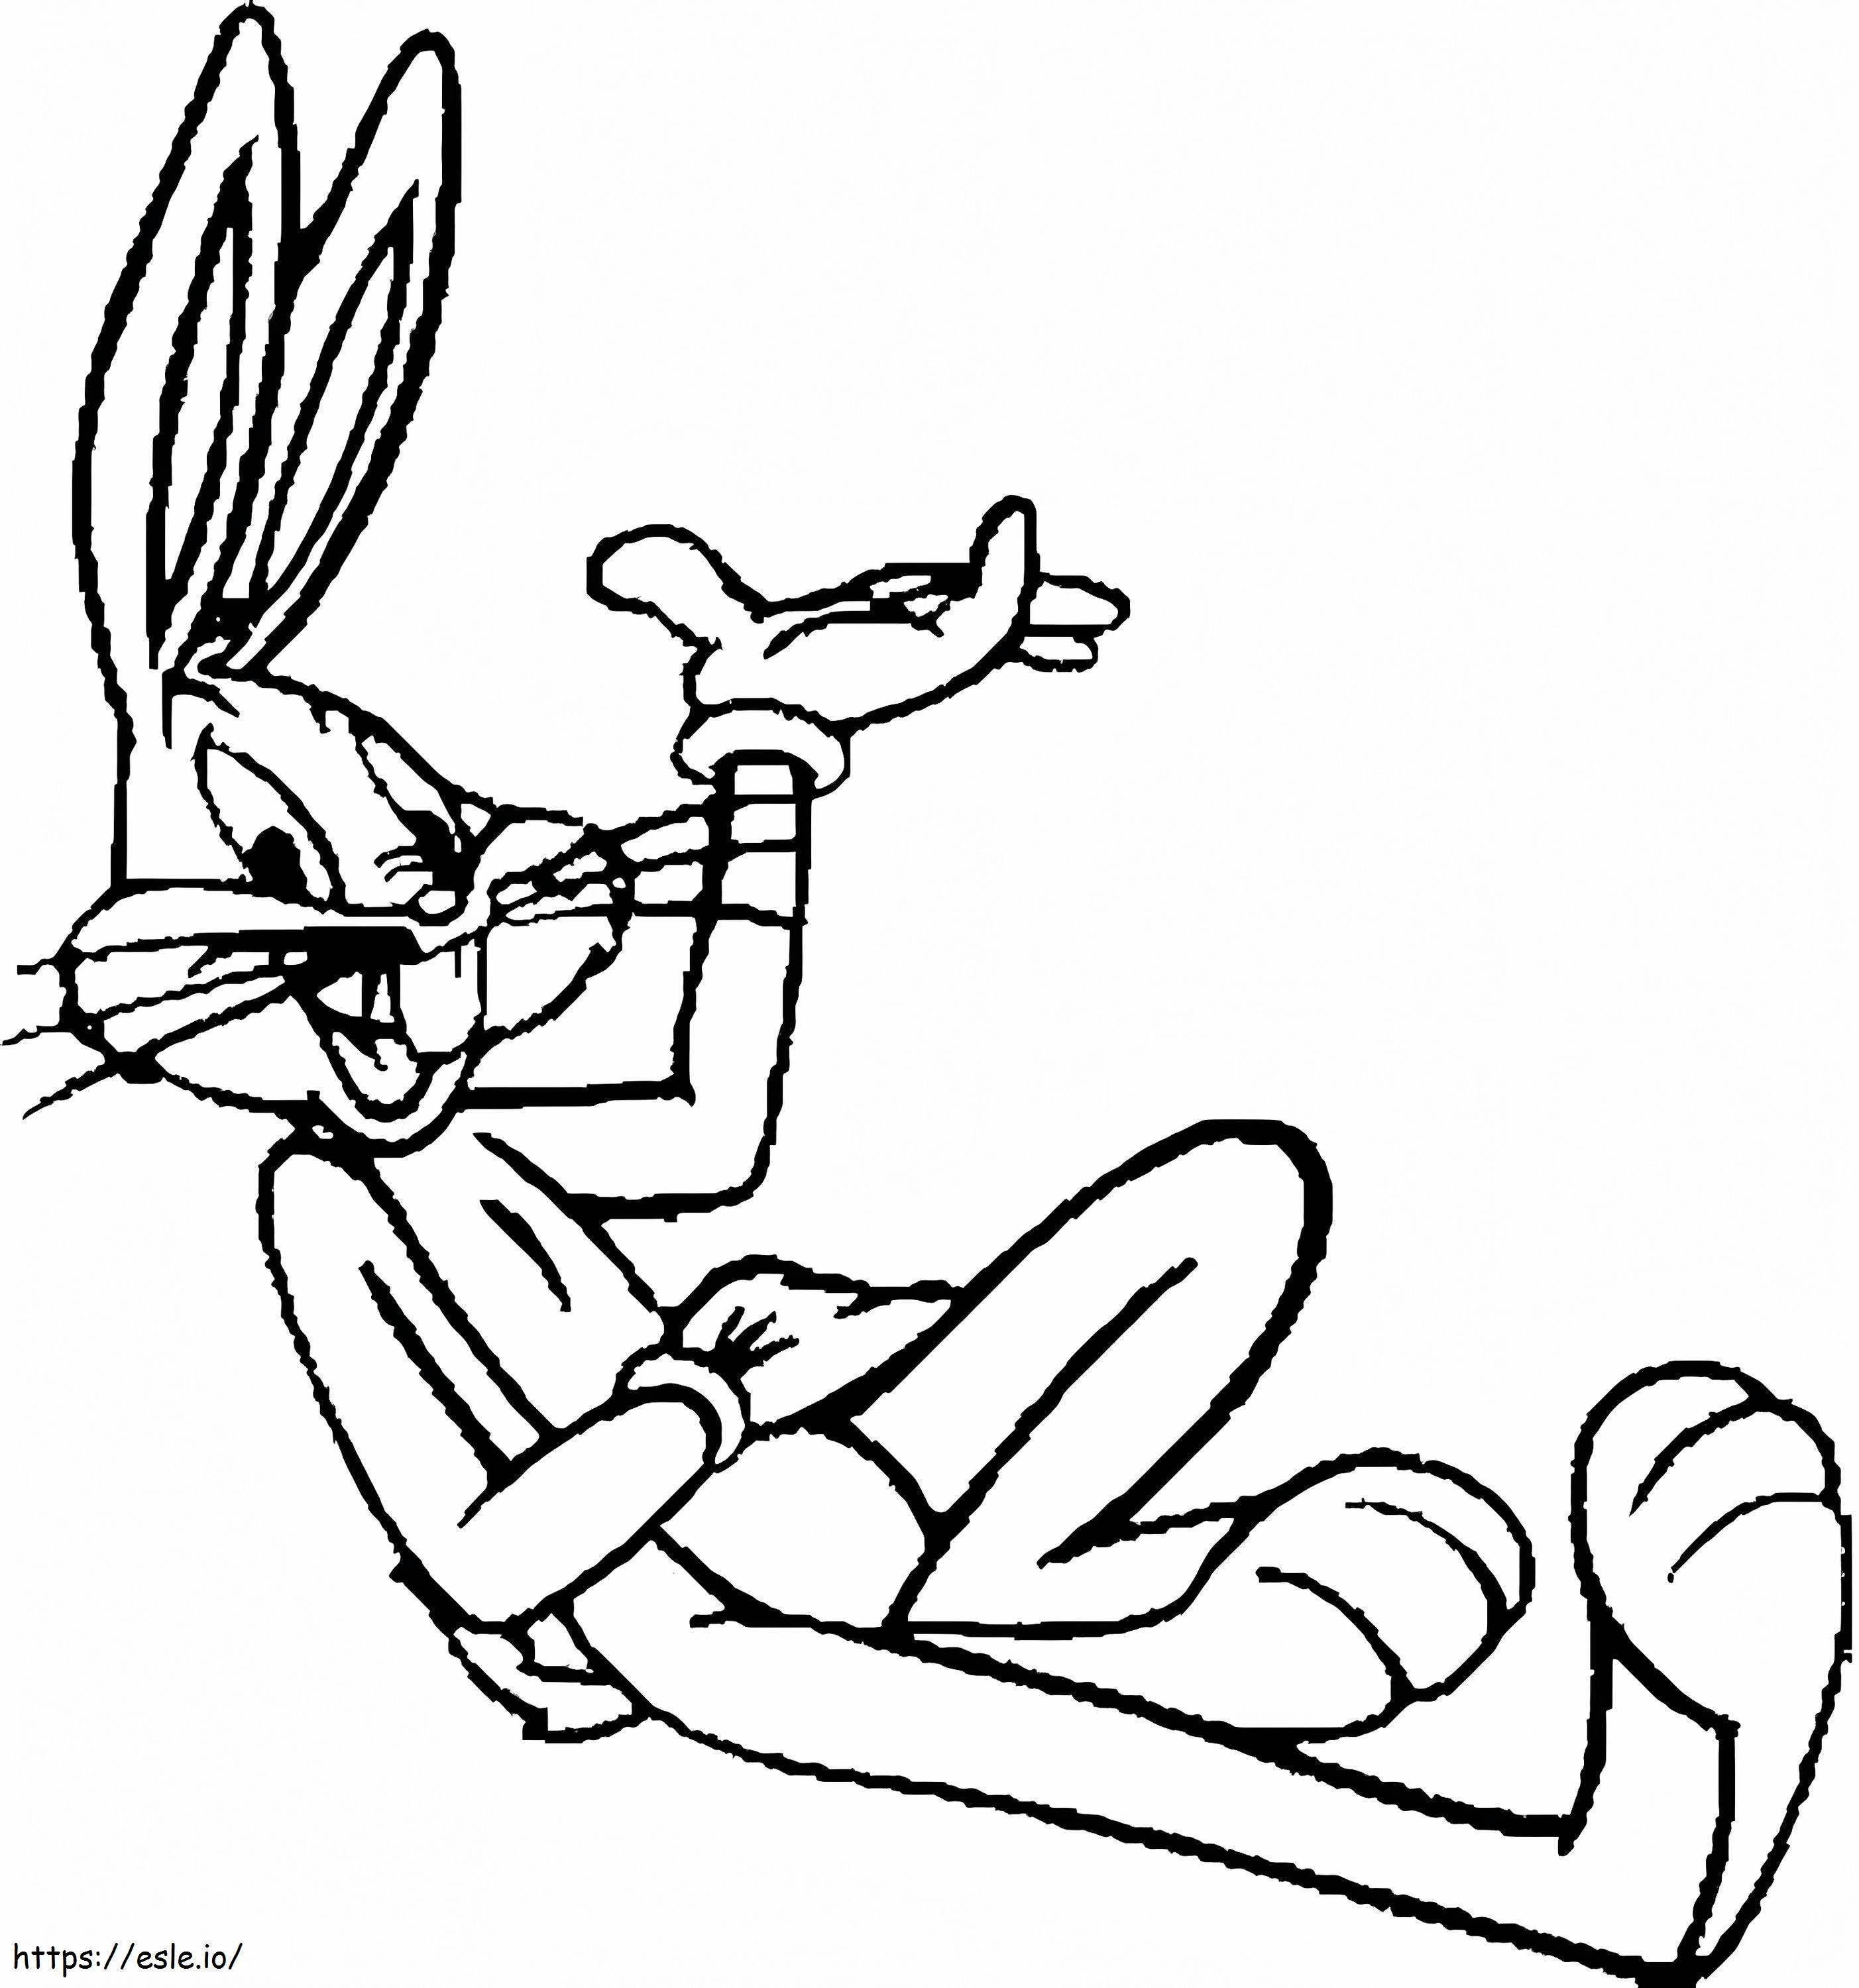 Zeichnen von Bugs Bunny im Liegen ausmalbilder